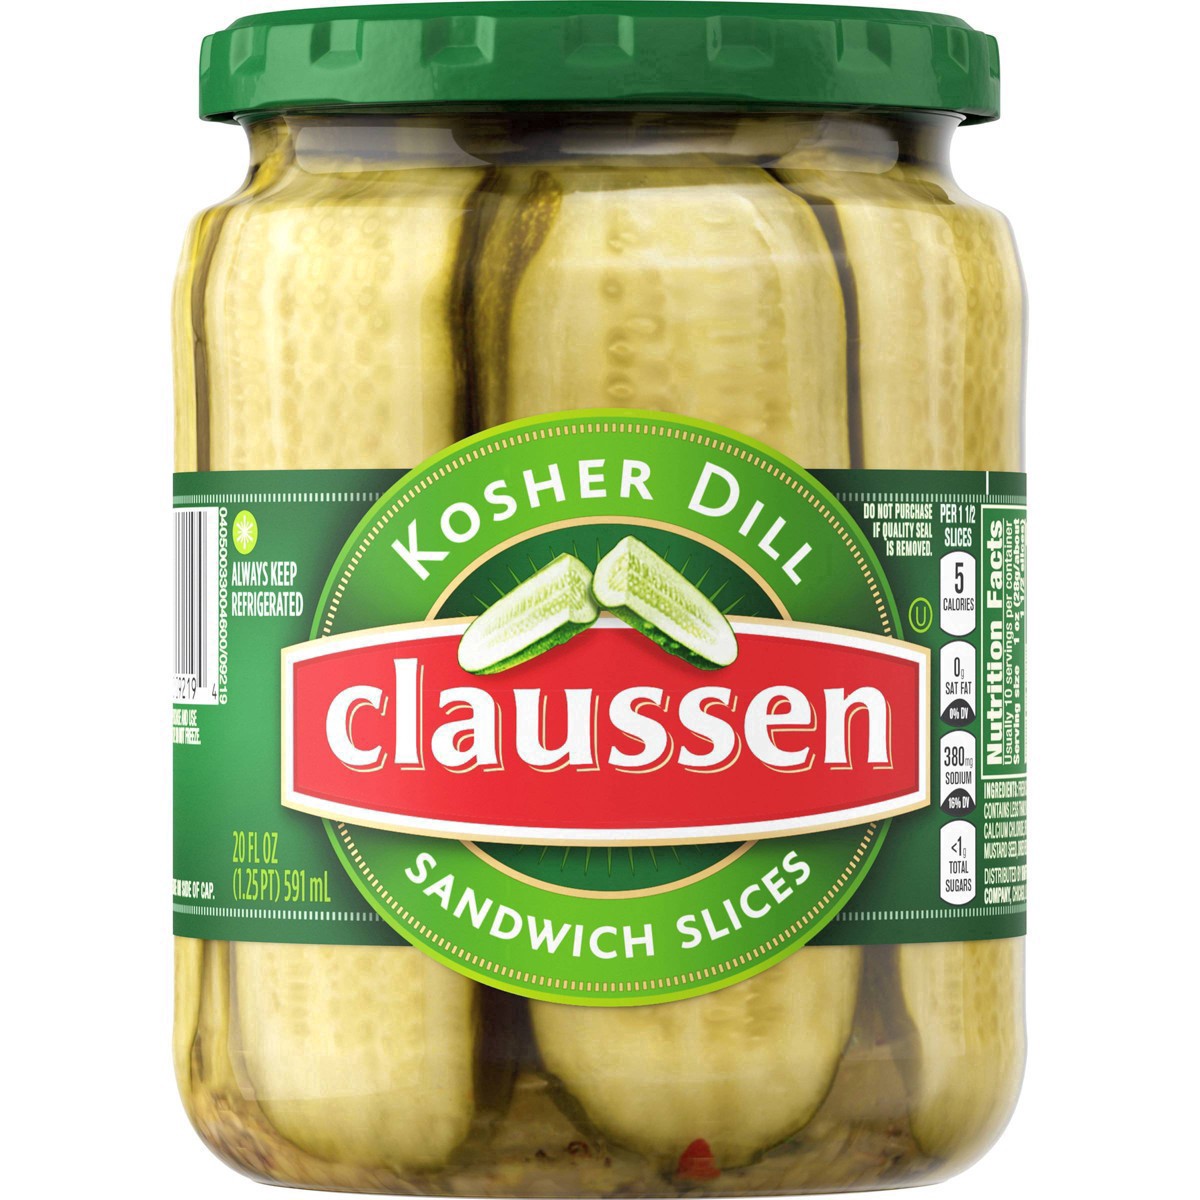 slide 139 of 144, Claussen Kosher Dill Pickle Sandwich Slices, 20 fl. oz. Jar, 20 fl oz